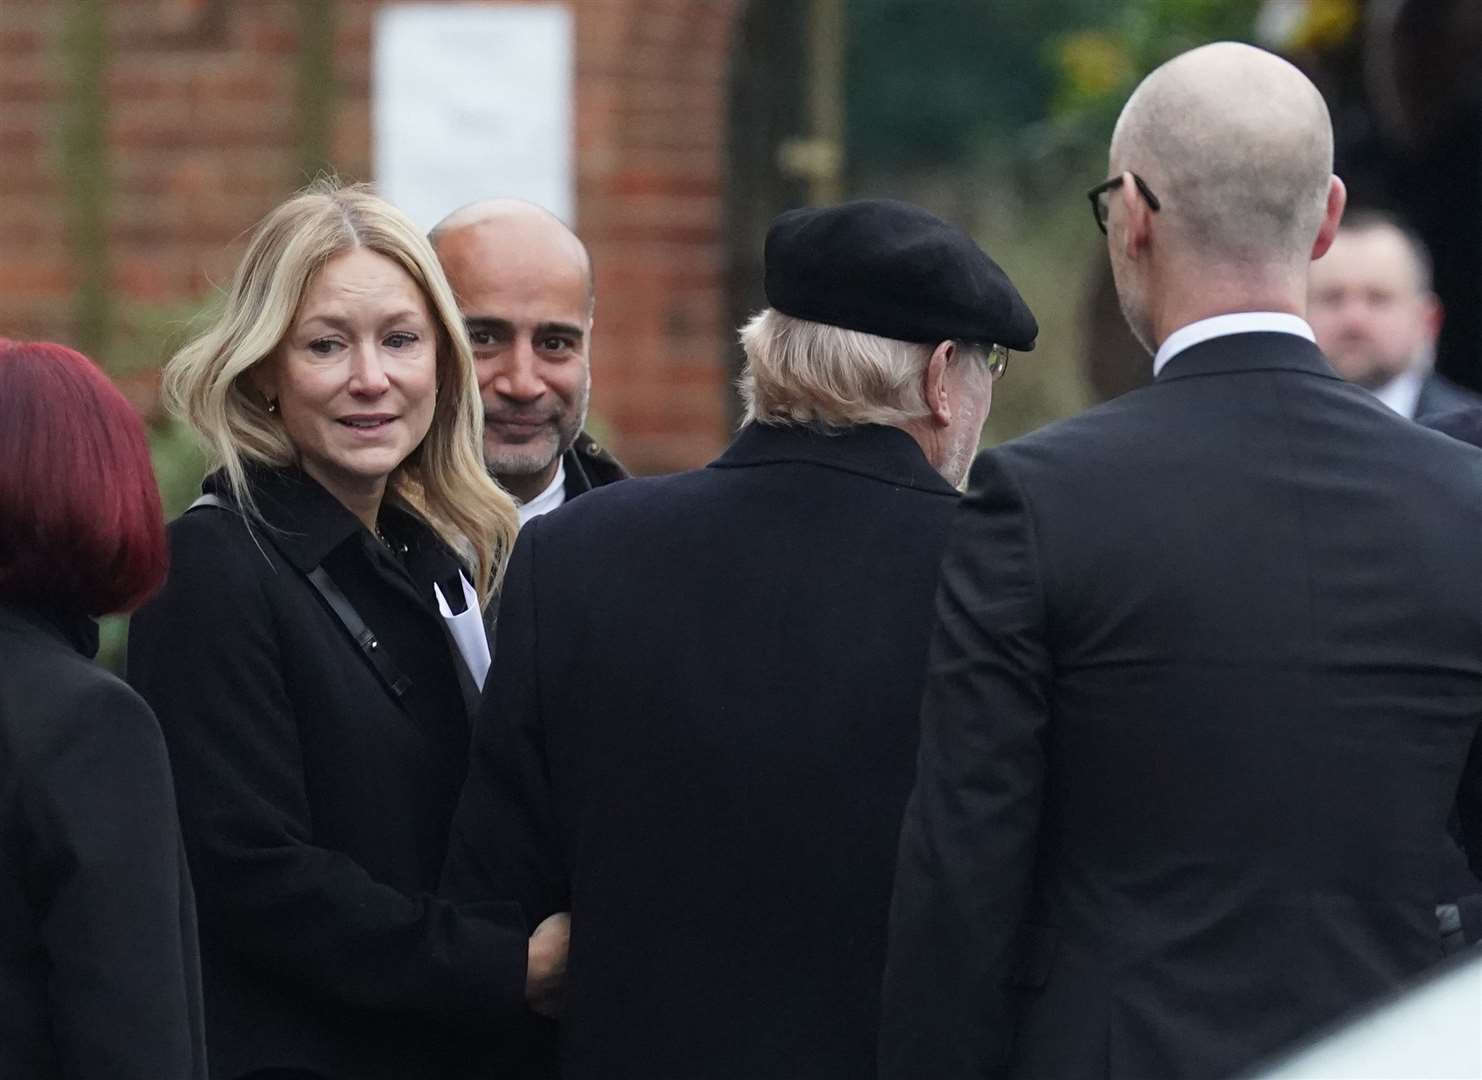 Rachel Kinnock, Lord Neil Kinnock and Stephen Kinnock, right, arrive for the service (Stefan Rousseau/PA)